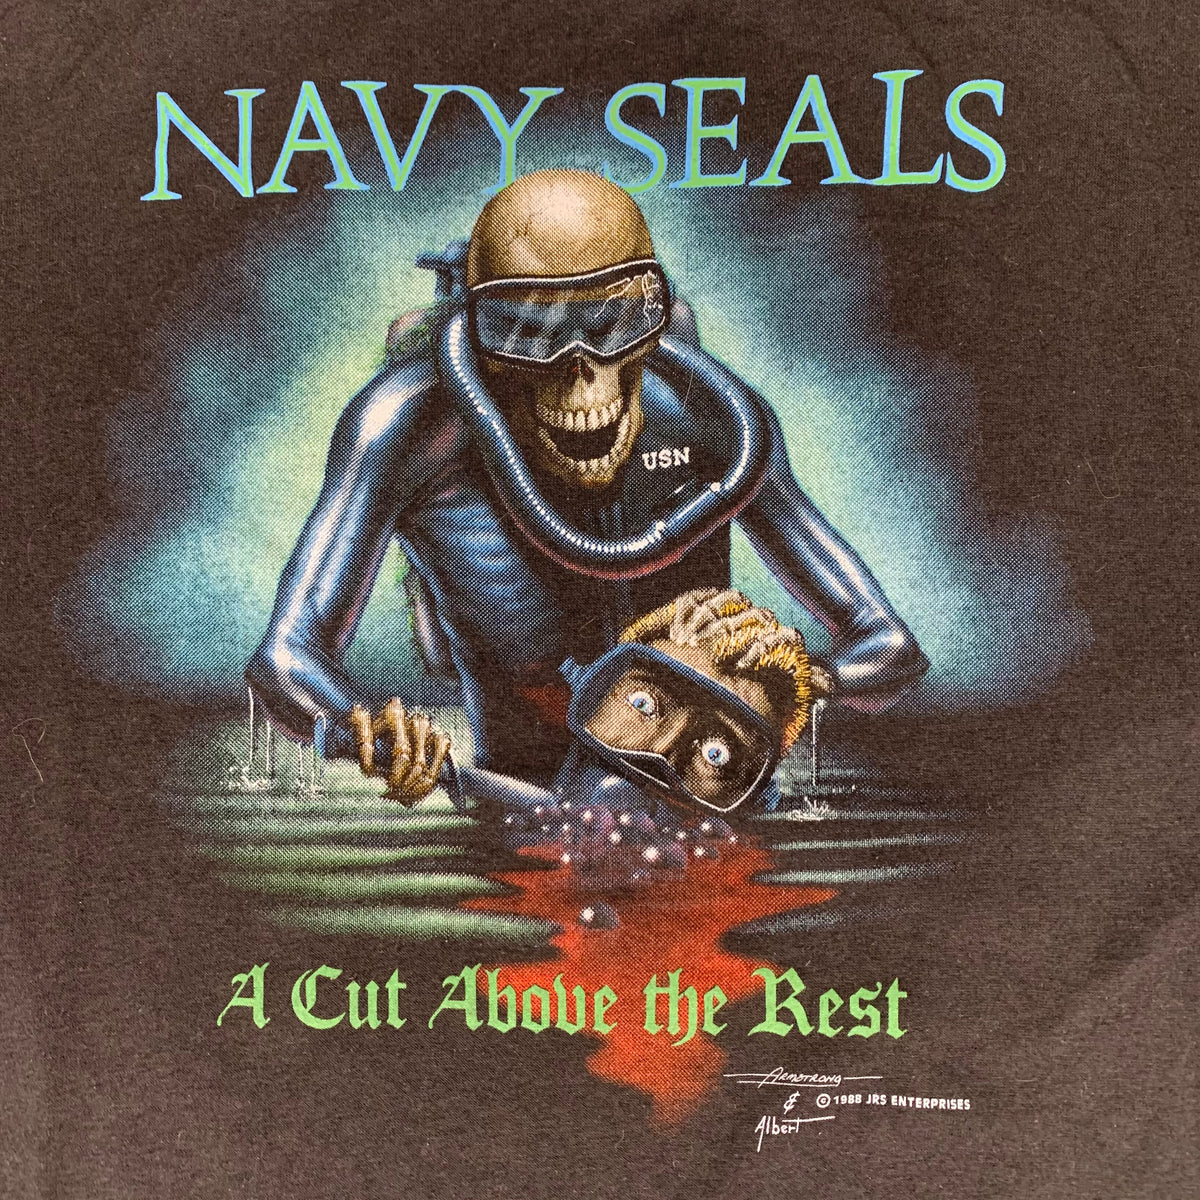 Vintage Navy SEALs &quot;A Cut Above The Rest&quot; T-Shirt